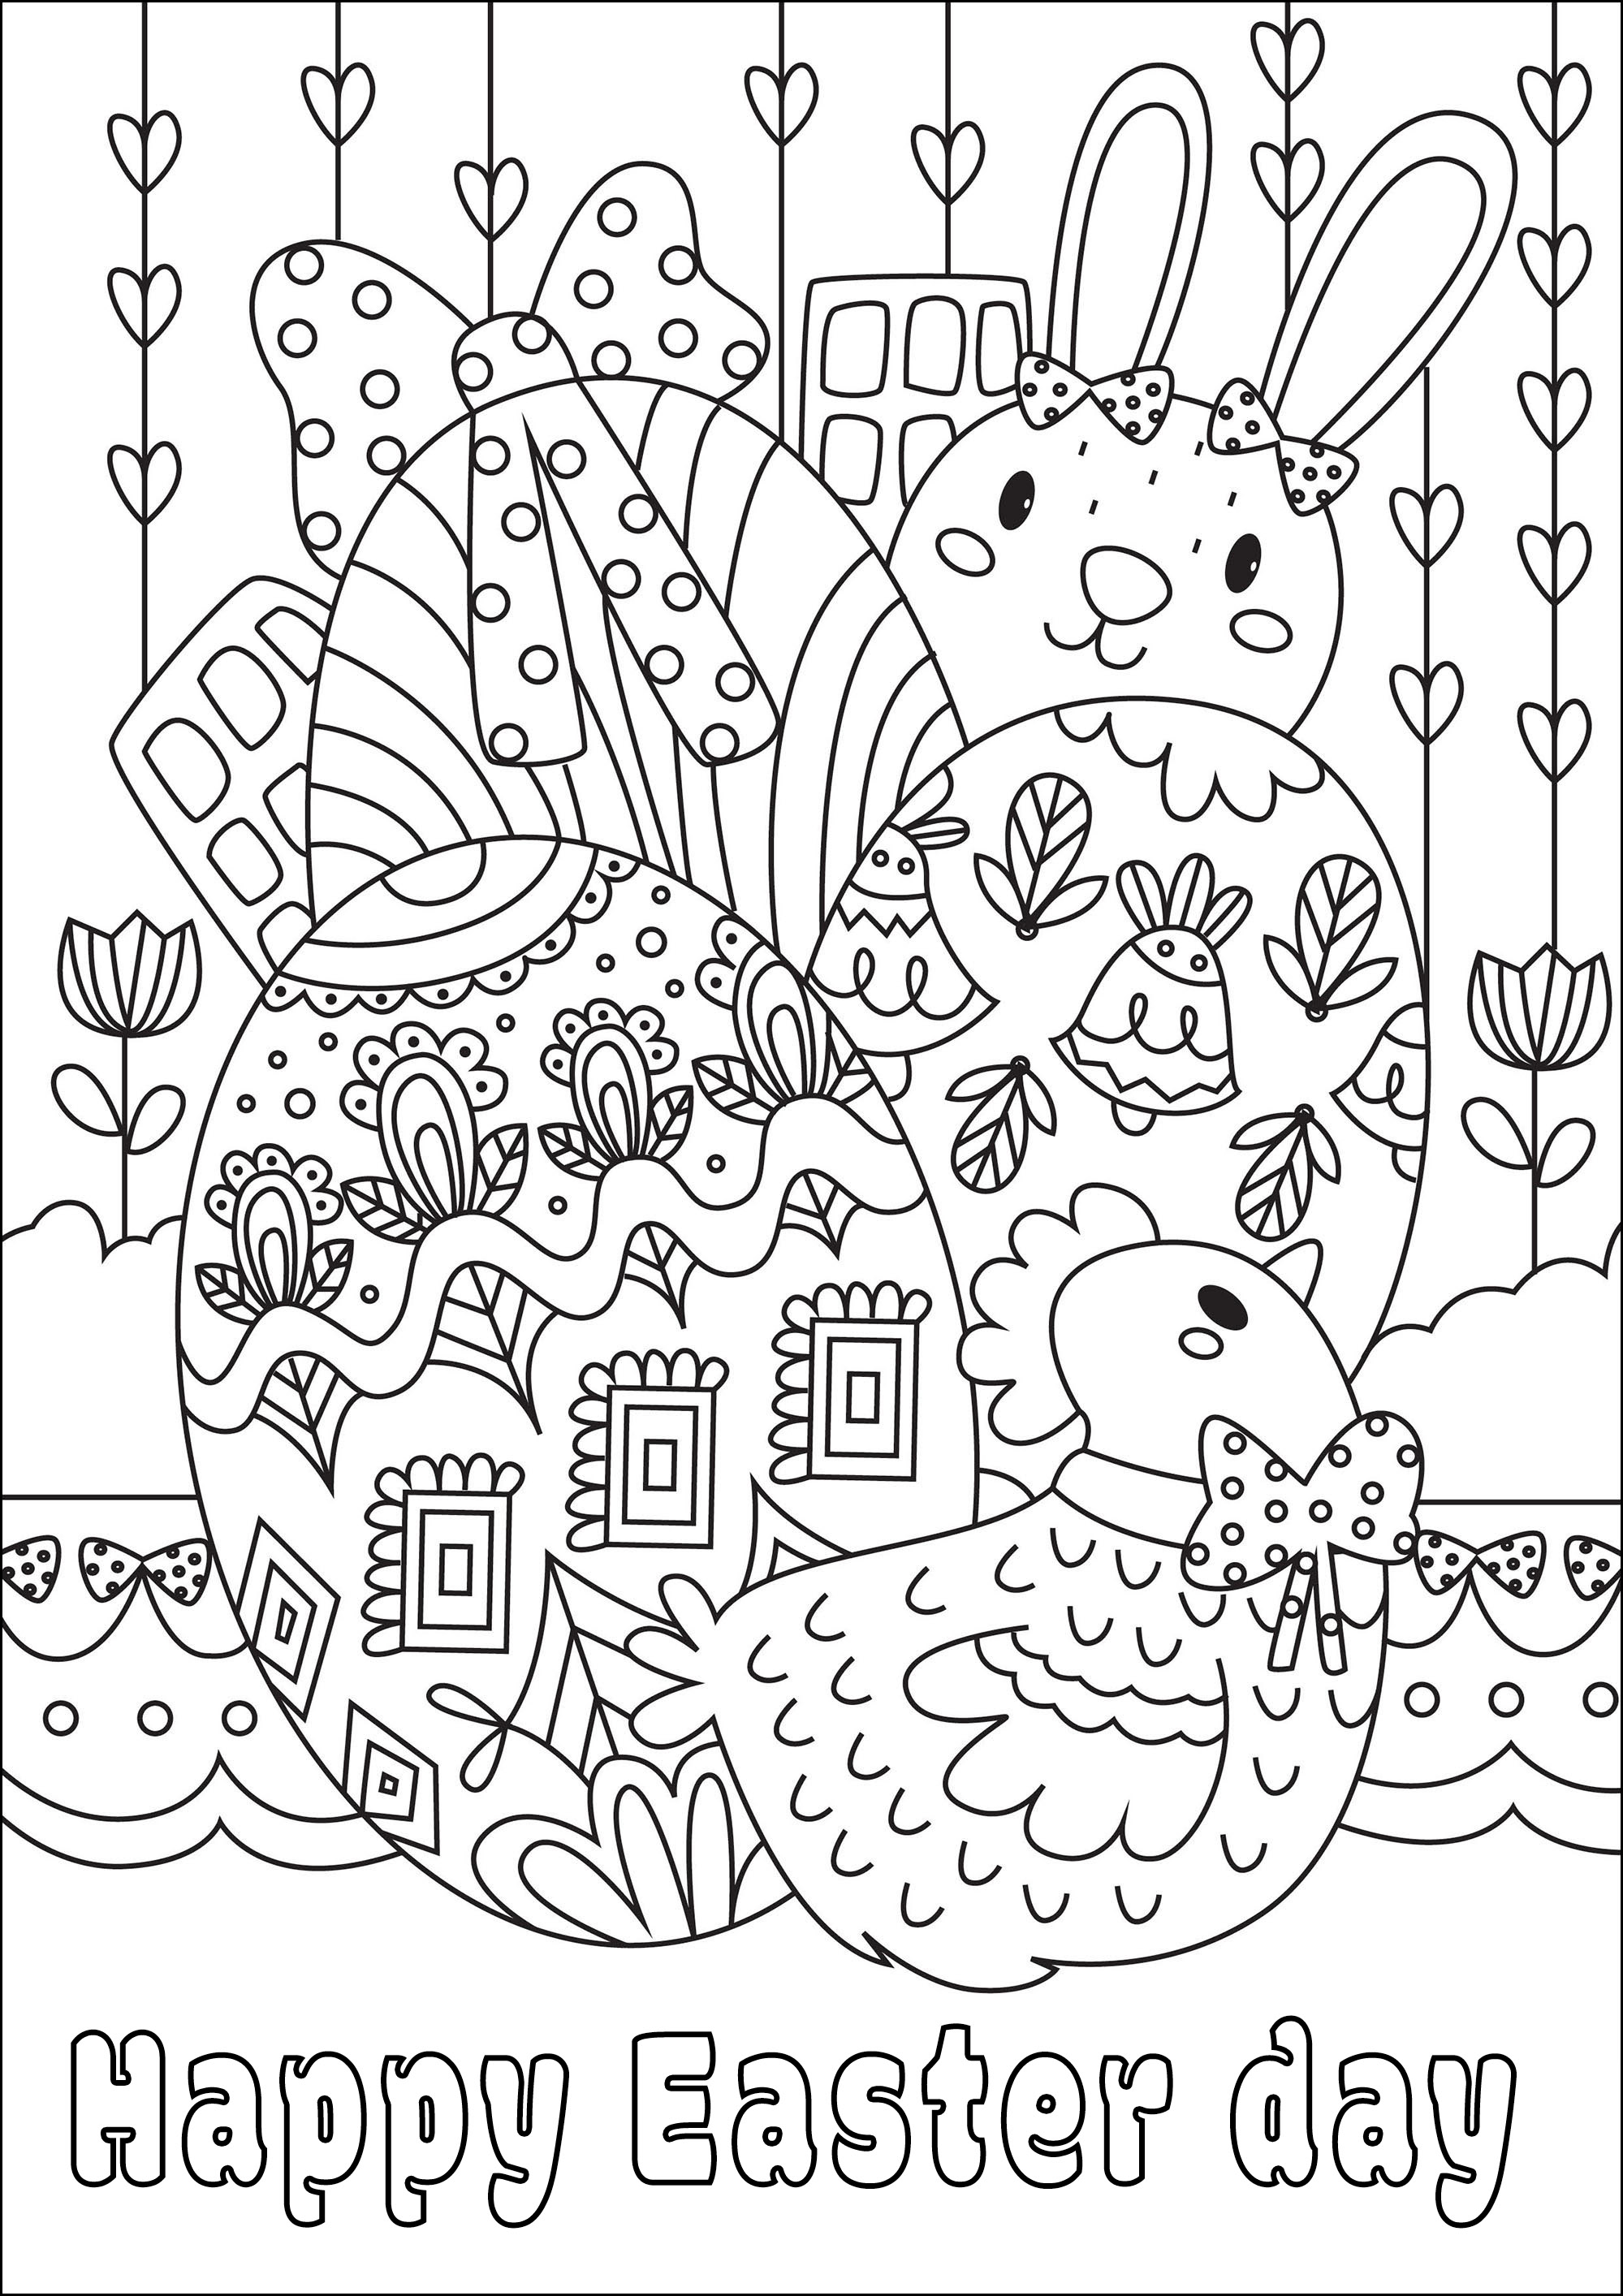 Pasqua da colorare. Una bella pagina da colorare con belle uova, un coniglio e una gallina, Artista : Gaelle Picard